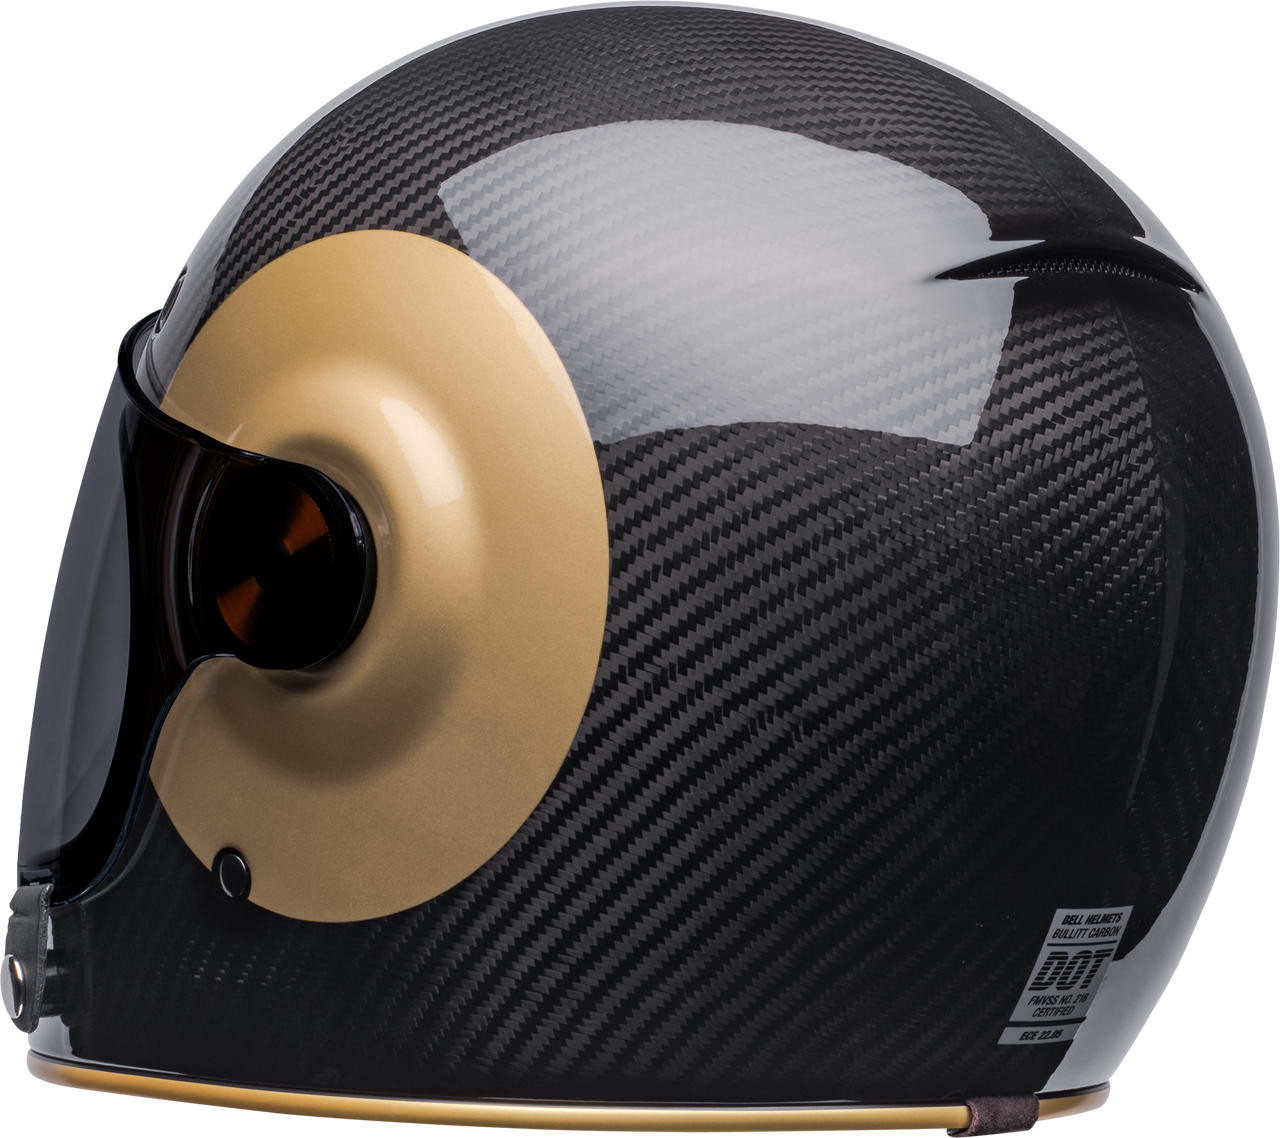 Bell Cruiser 2022 Bullitt Carbon Adult Helmet (TT Black/Gold)